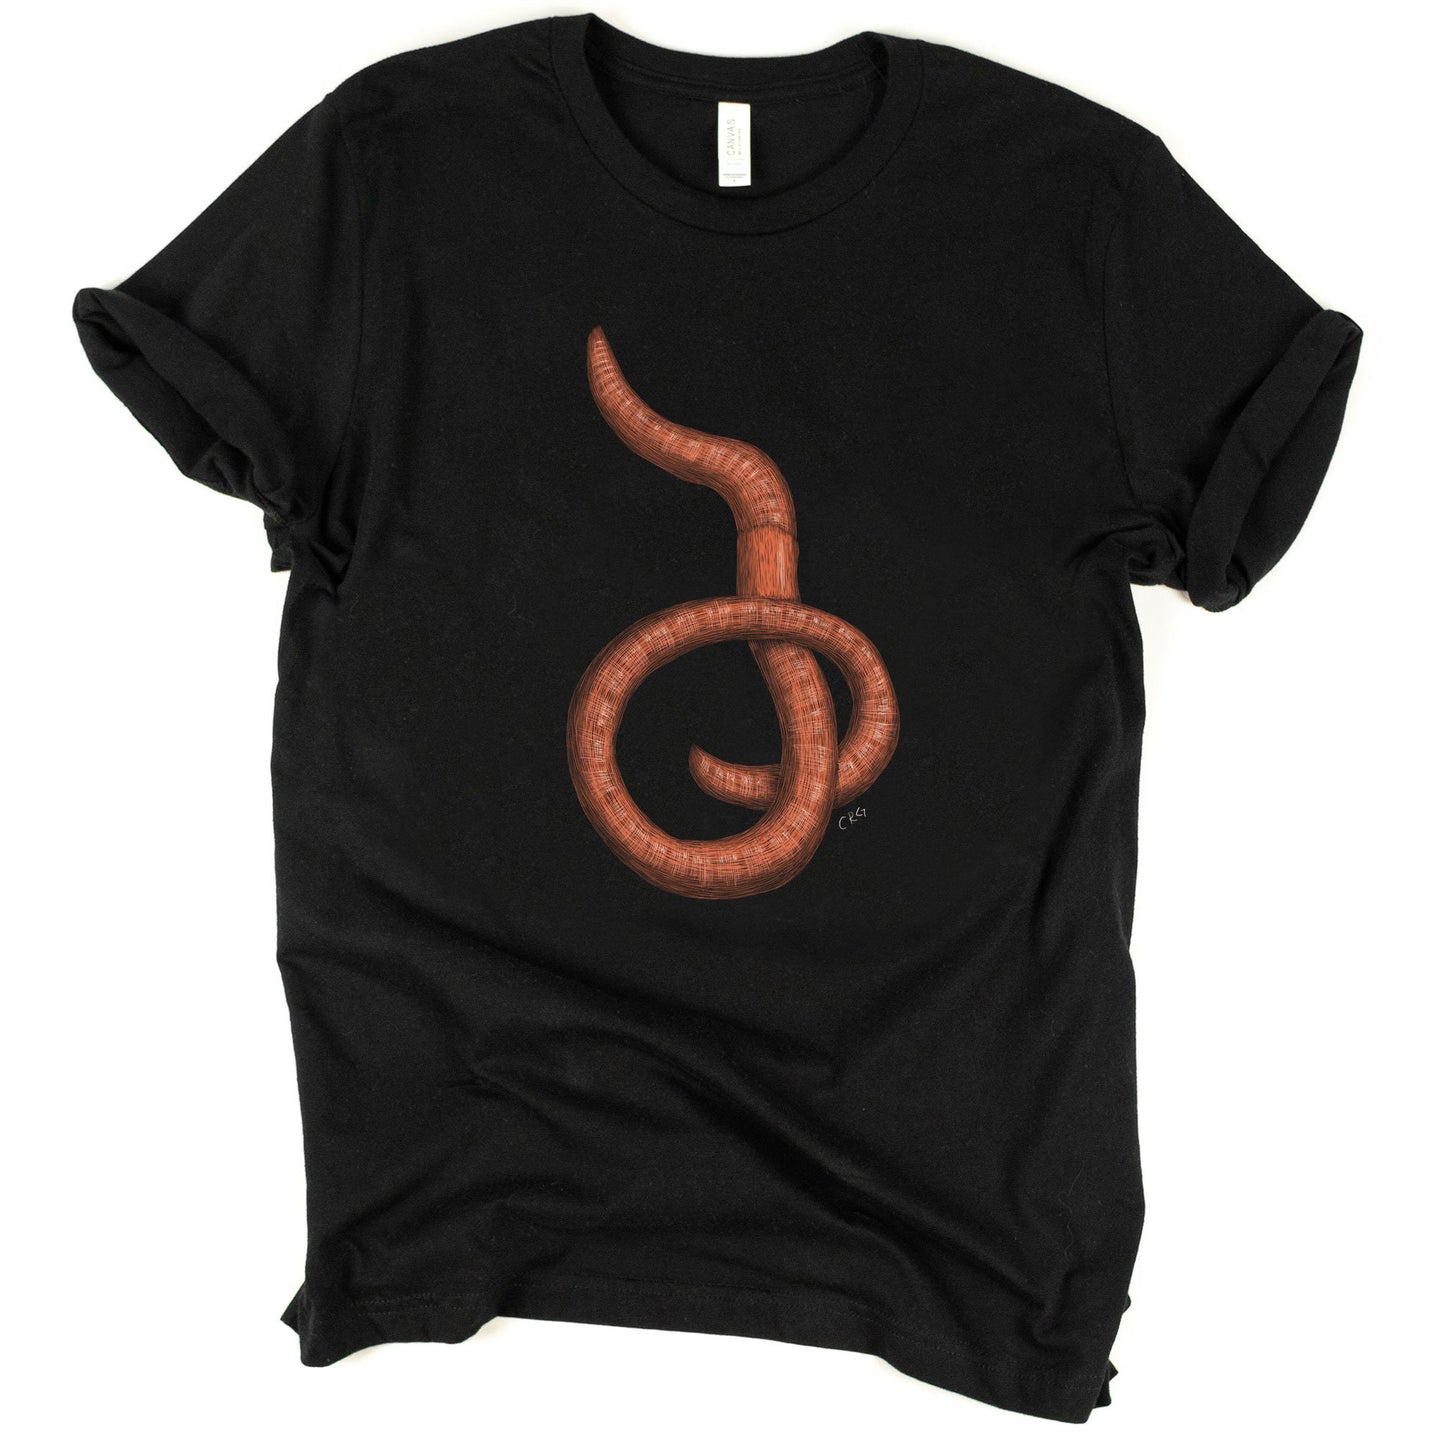 Earthworm Shirt